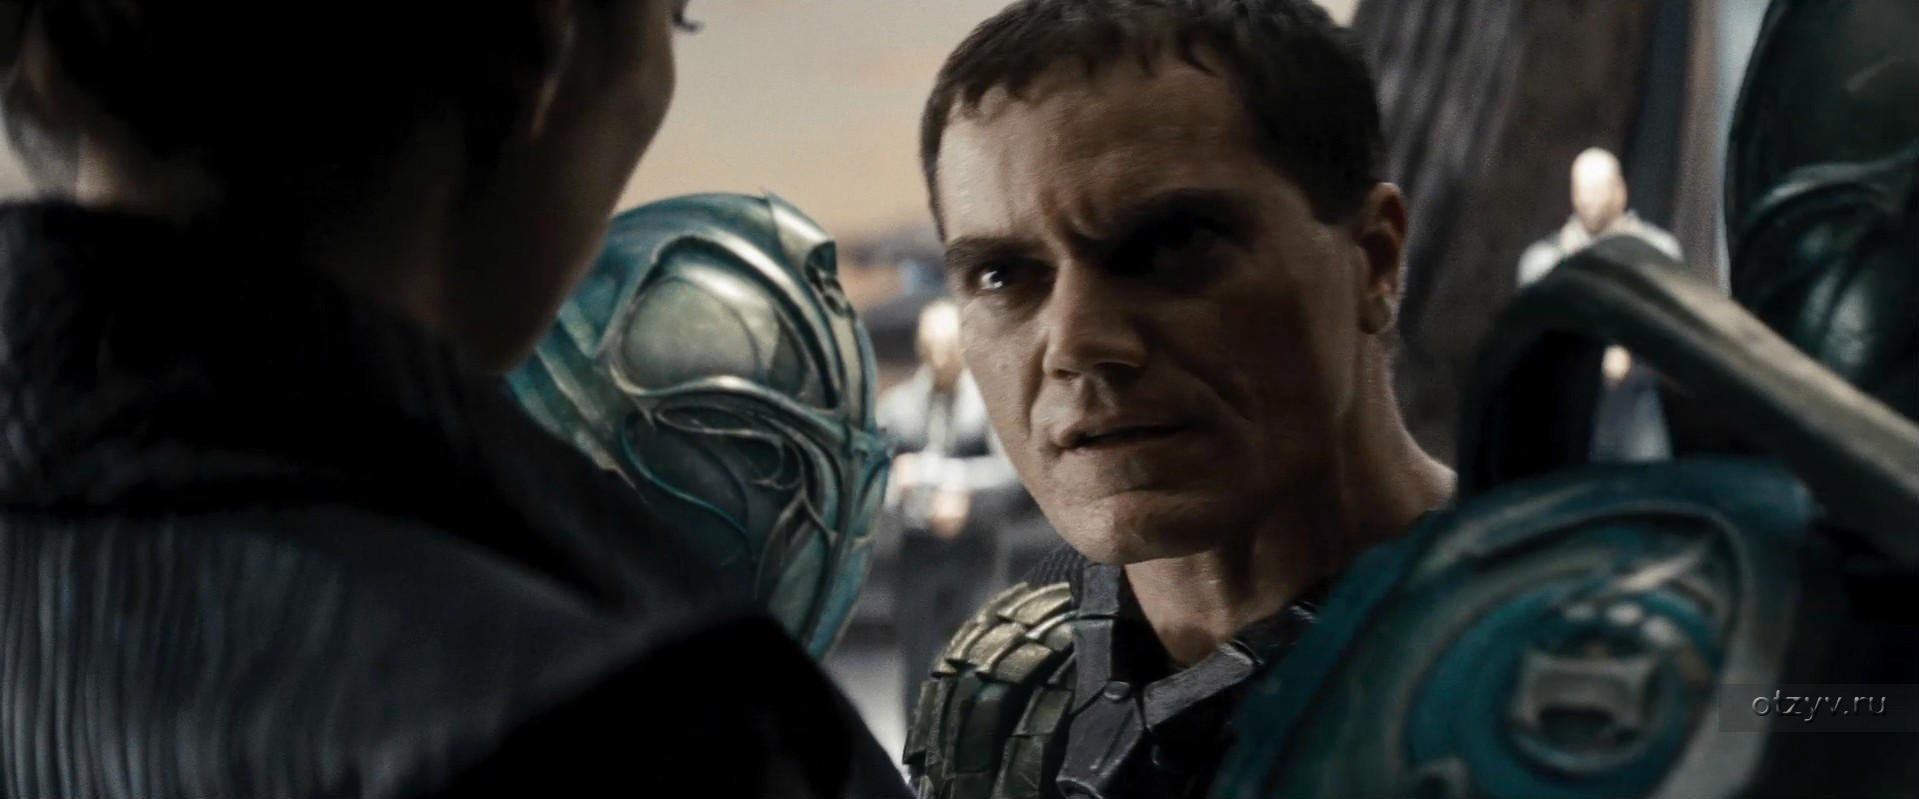 Спасает людей человек из стали. Man of Steel 2013 кадры. Человек из стали 2013 генерал зод кадры.